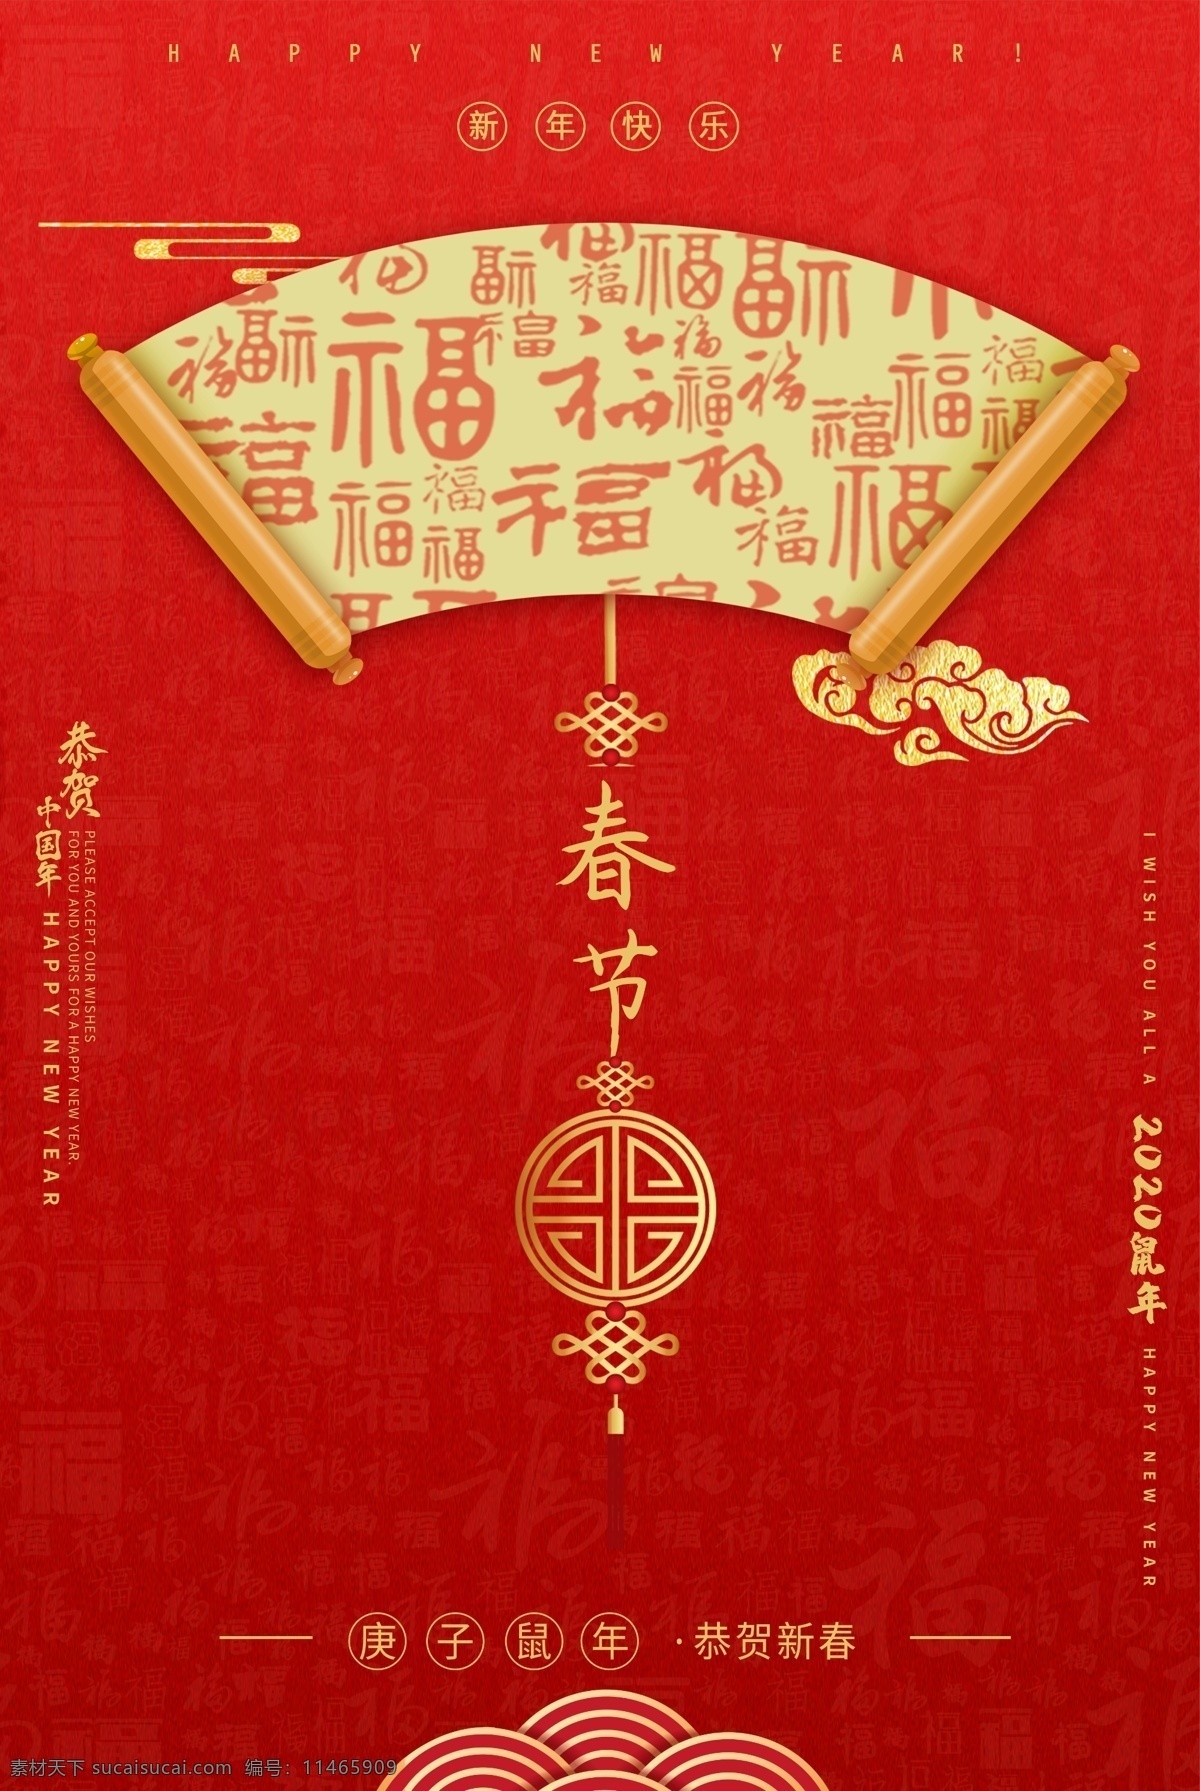 春节 传统节日 活动 宣传海报 传统 节日 宣传 海报